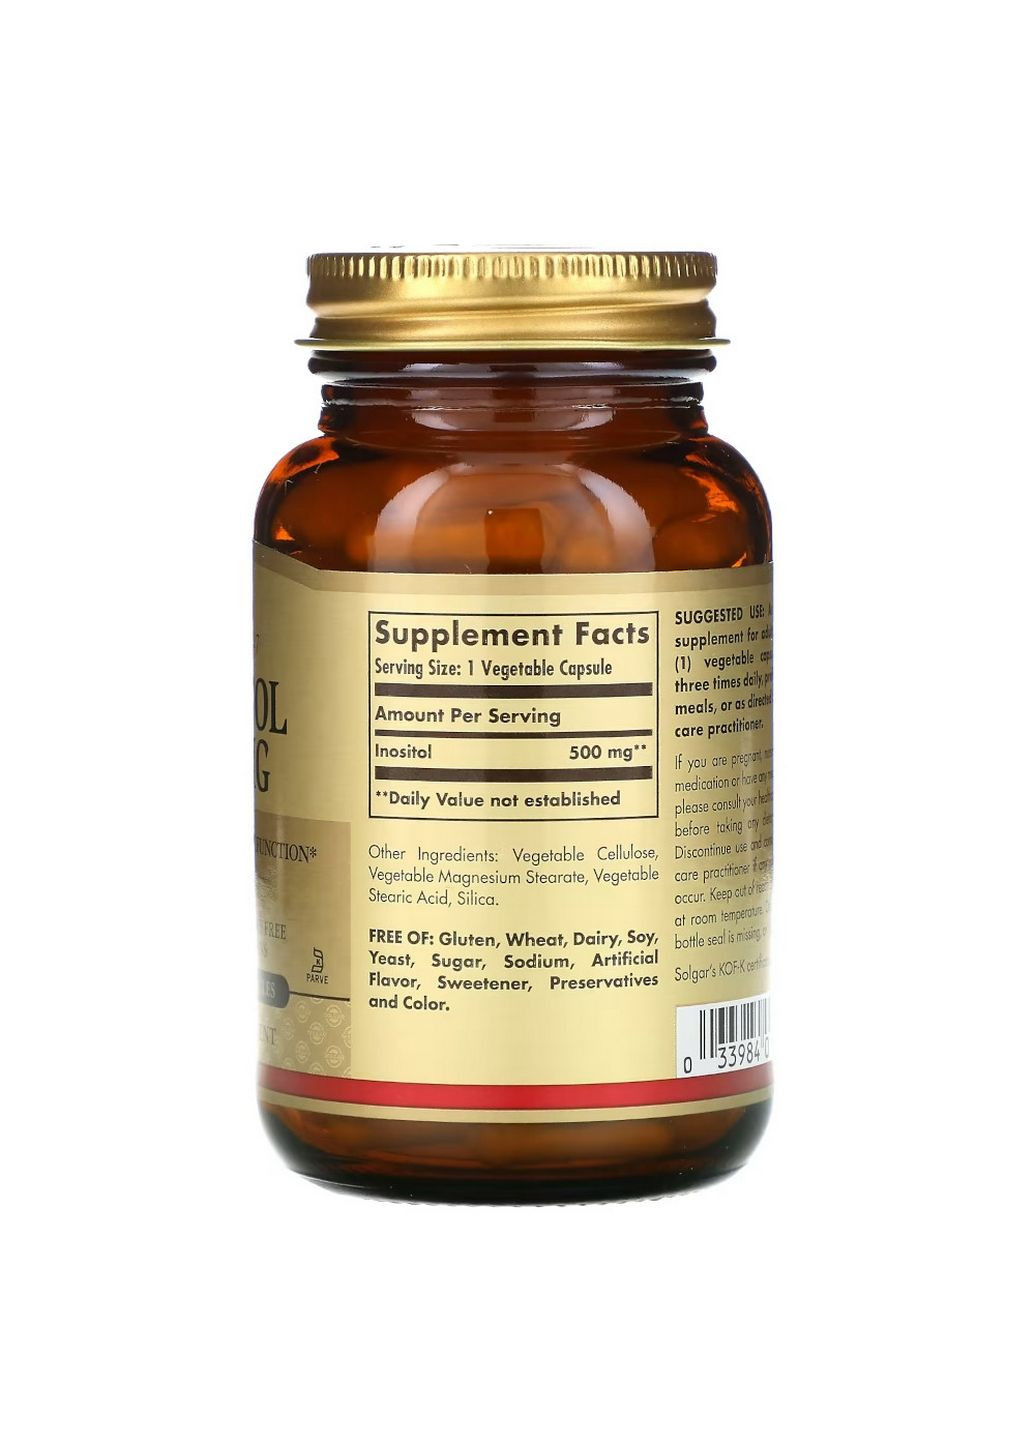 Витамины и минералы Inositol 500 mg, 100 вегакапсул Solgar (293341409)